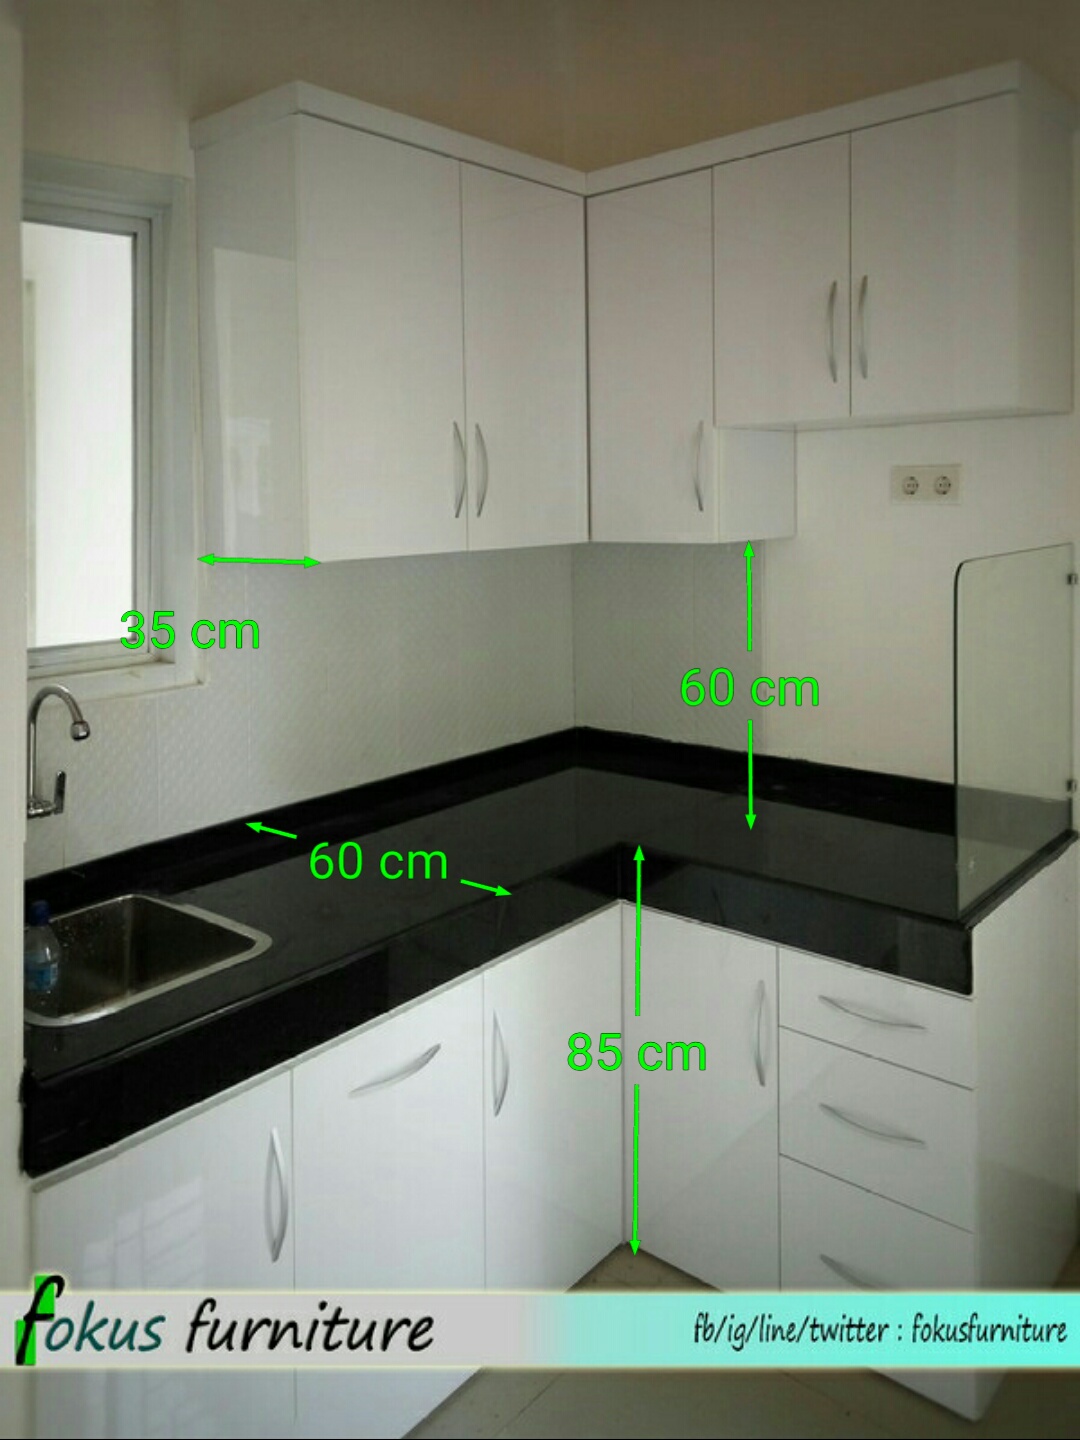  Ukuran  kitchen set